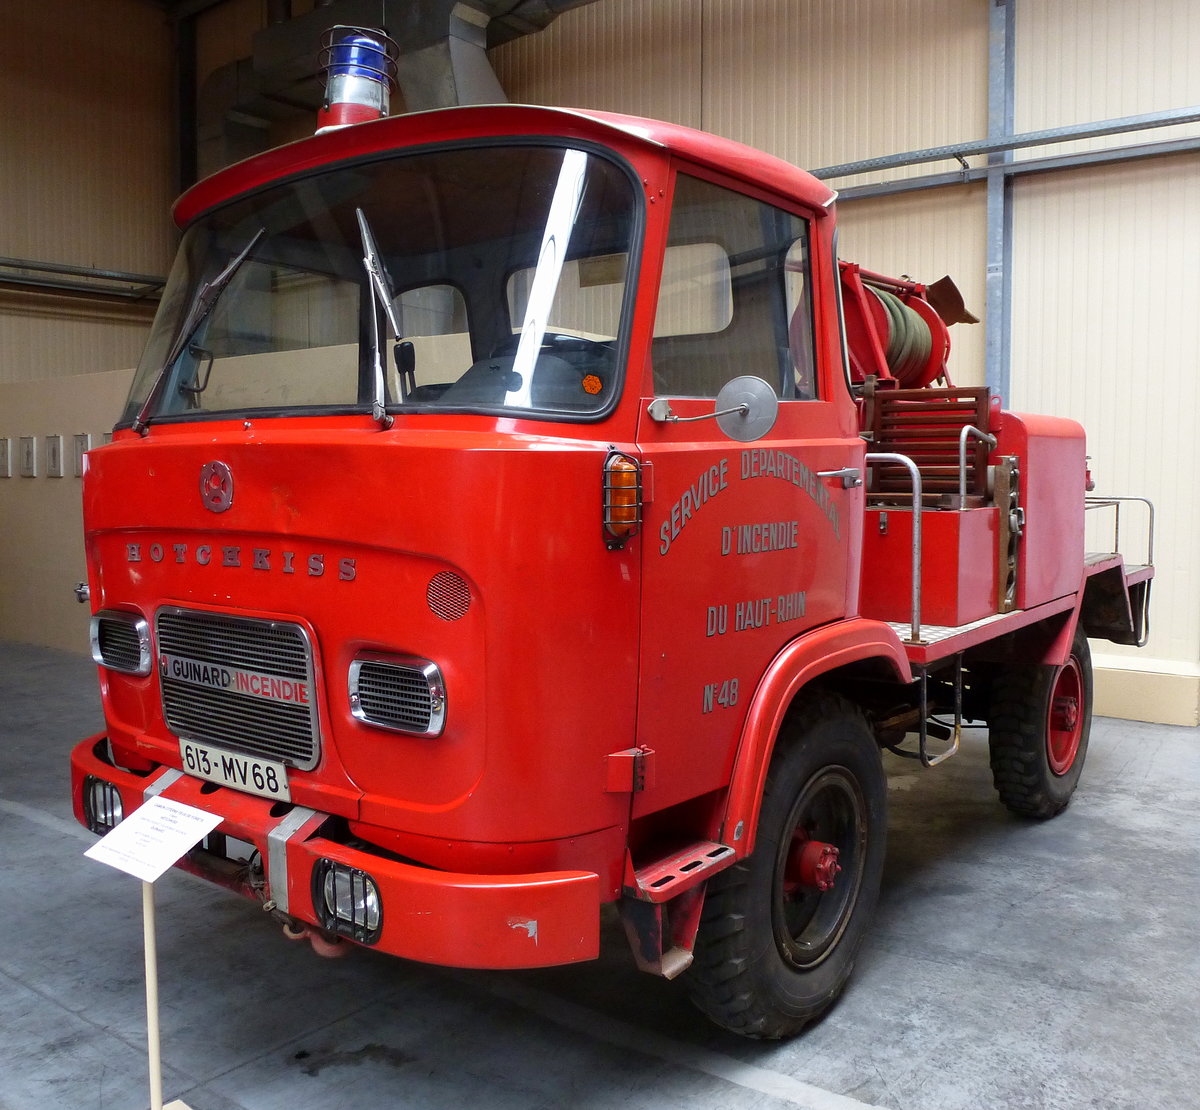 Hotchkiss, Feuerwehr aus dem Oberelsa, Feuerwehrmuseum Vieux-Ferrette, Mai 2016